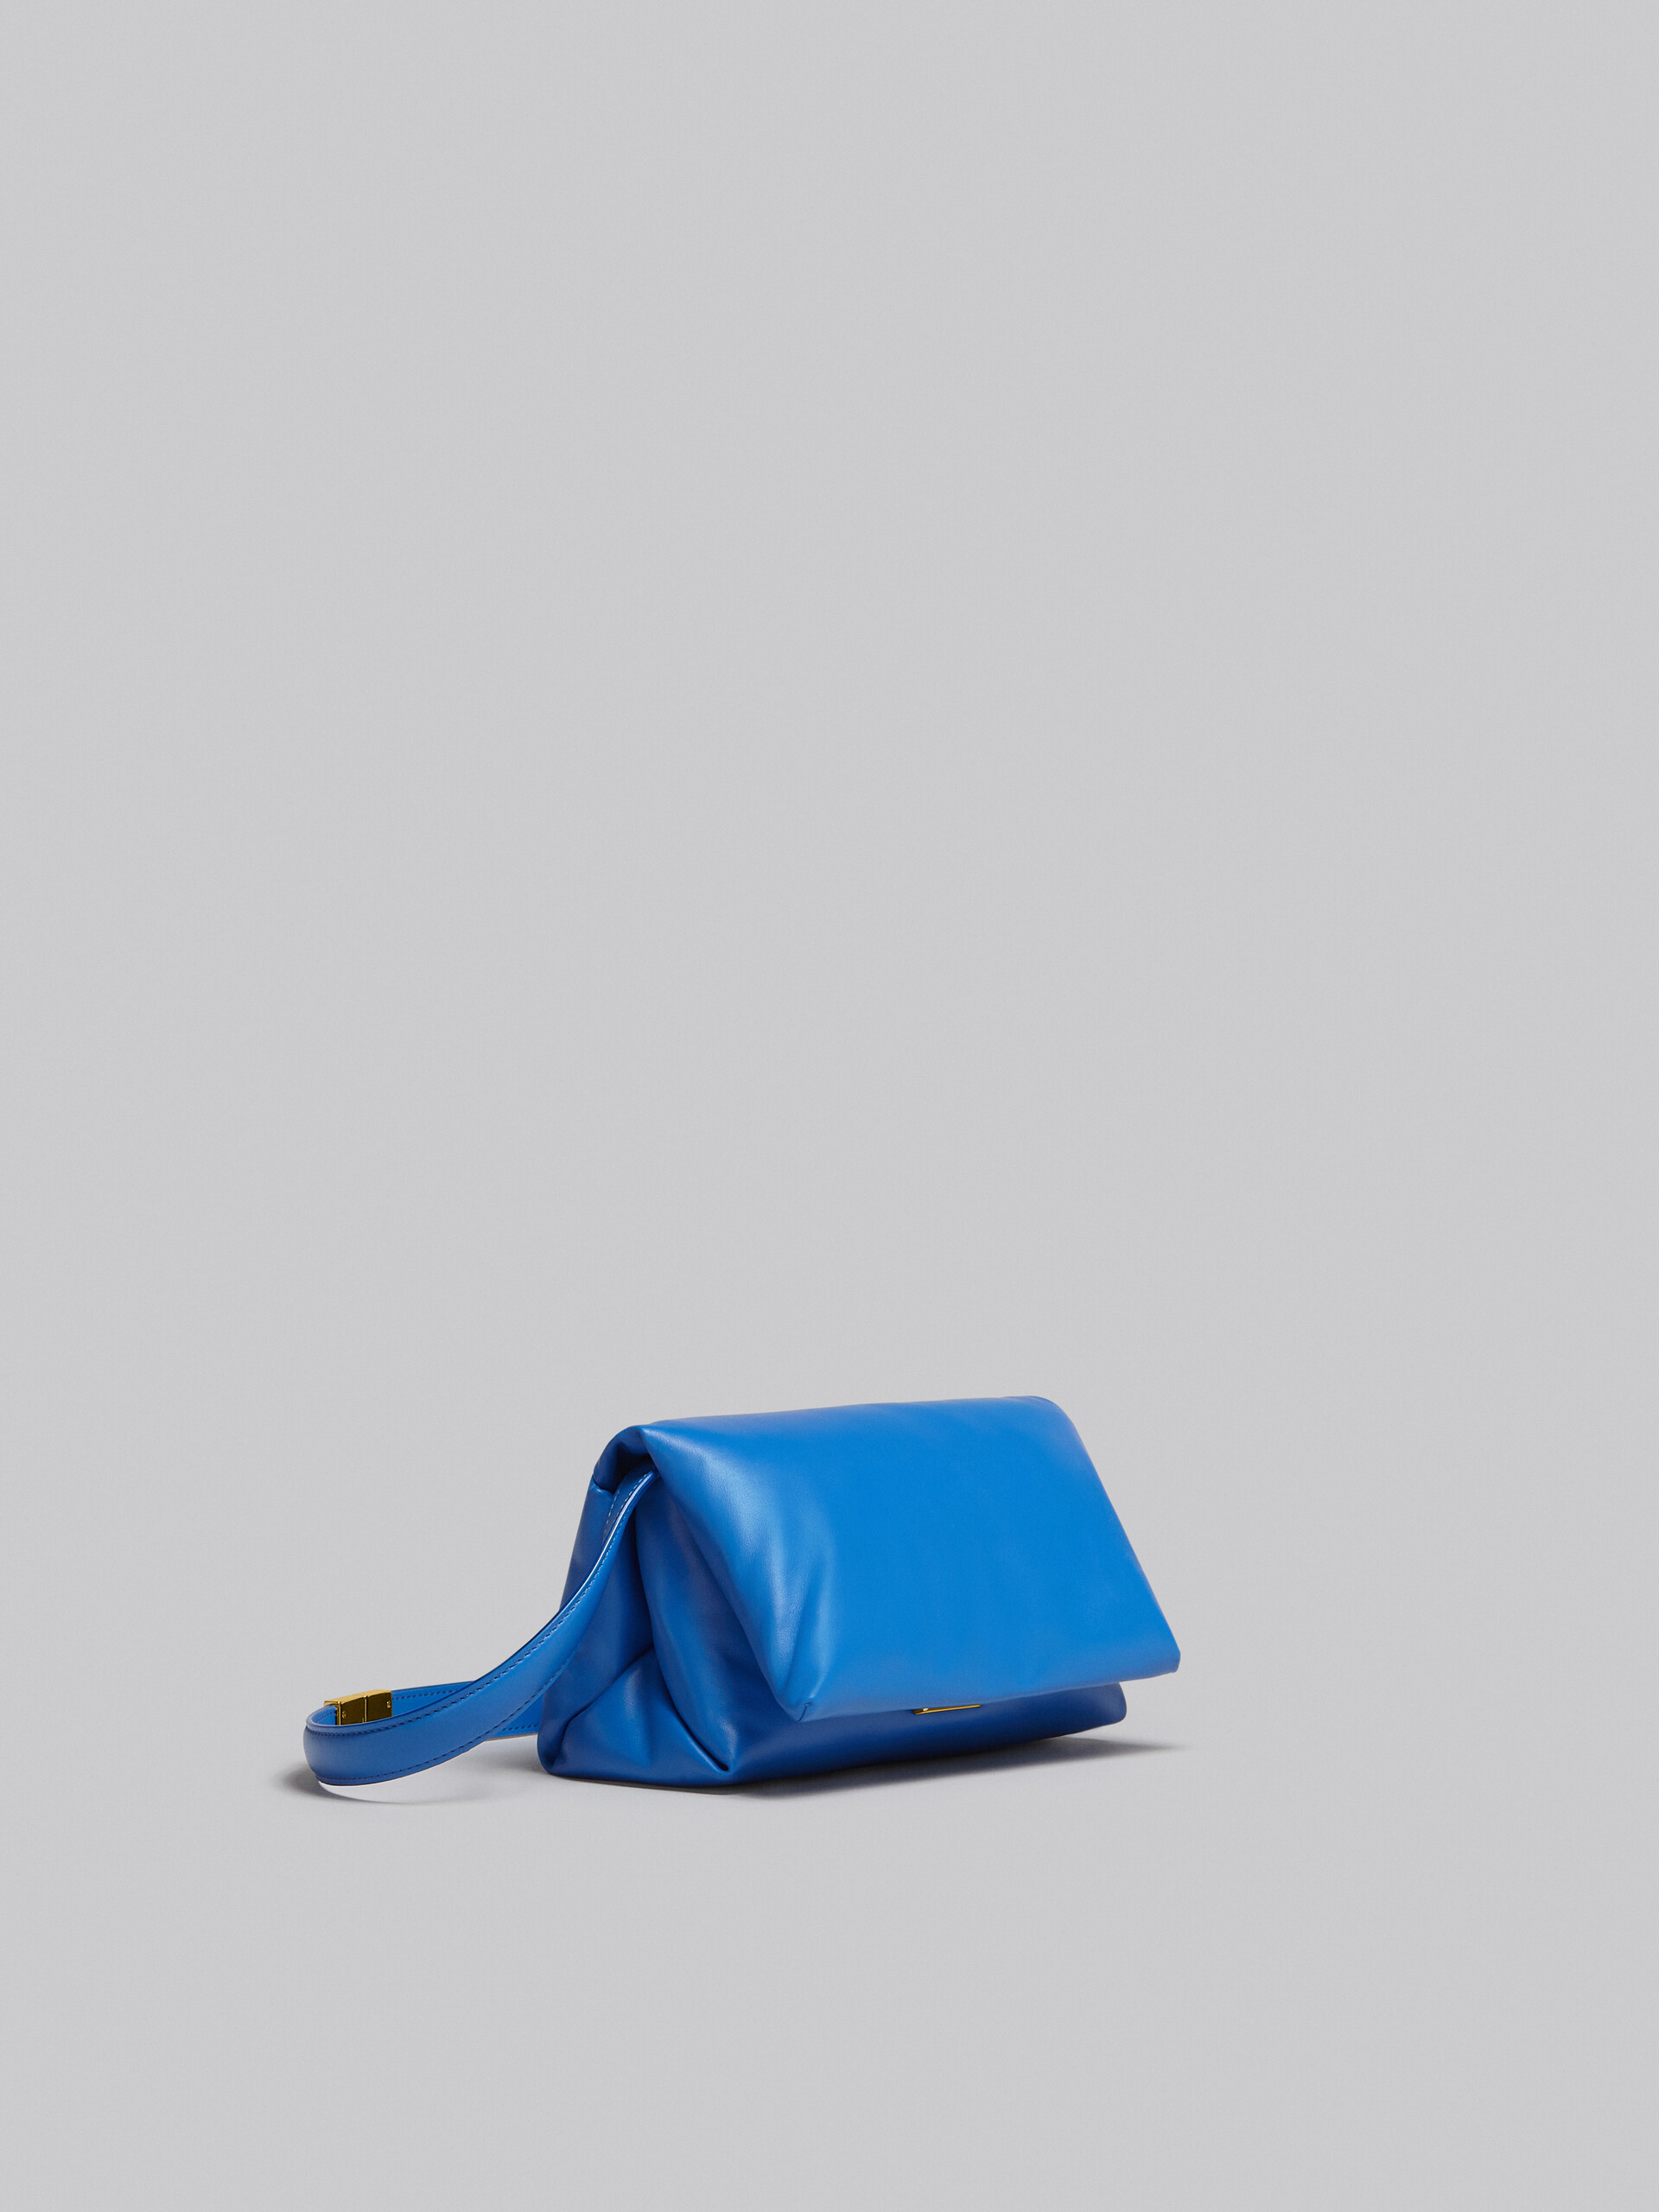 Small blue calsfkin Prisma bag - Shoulder Bag - Image 6